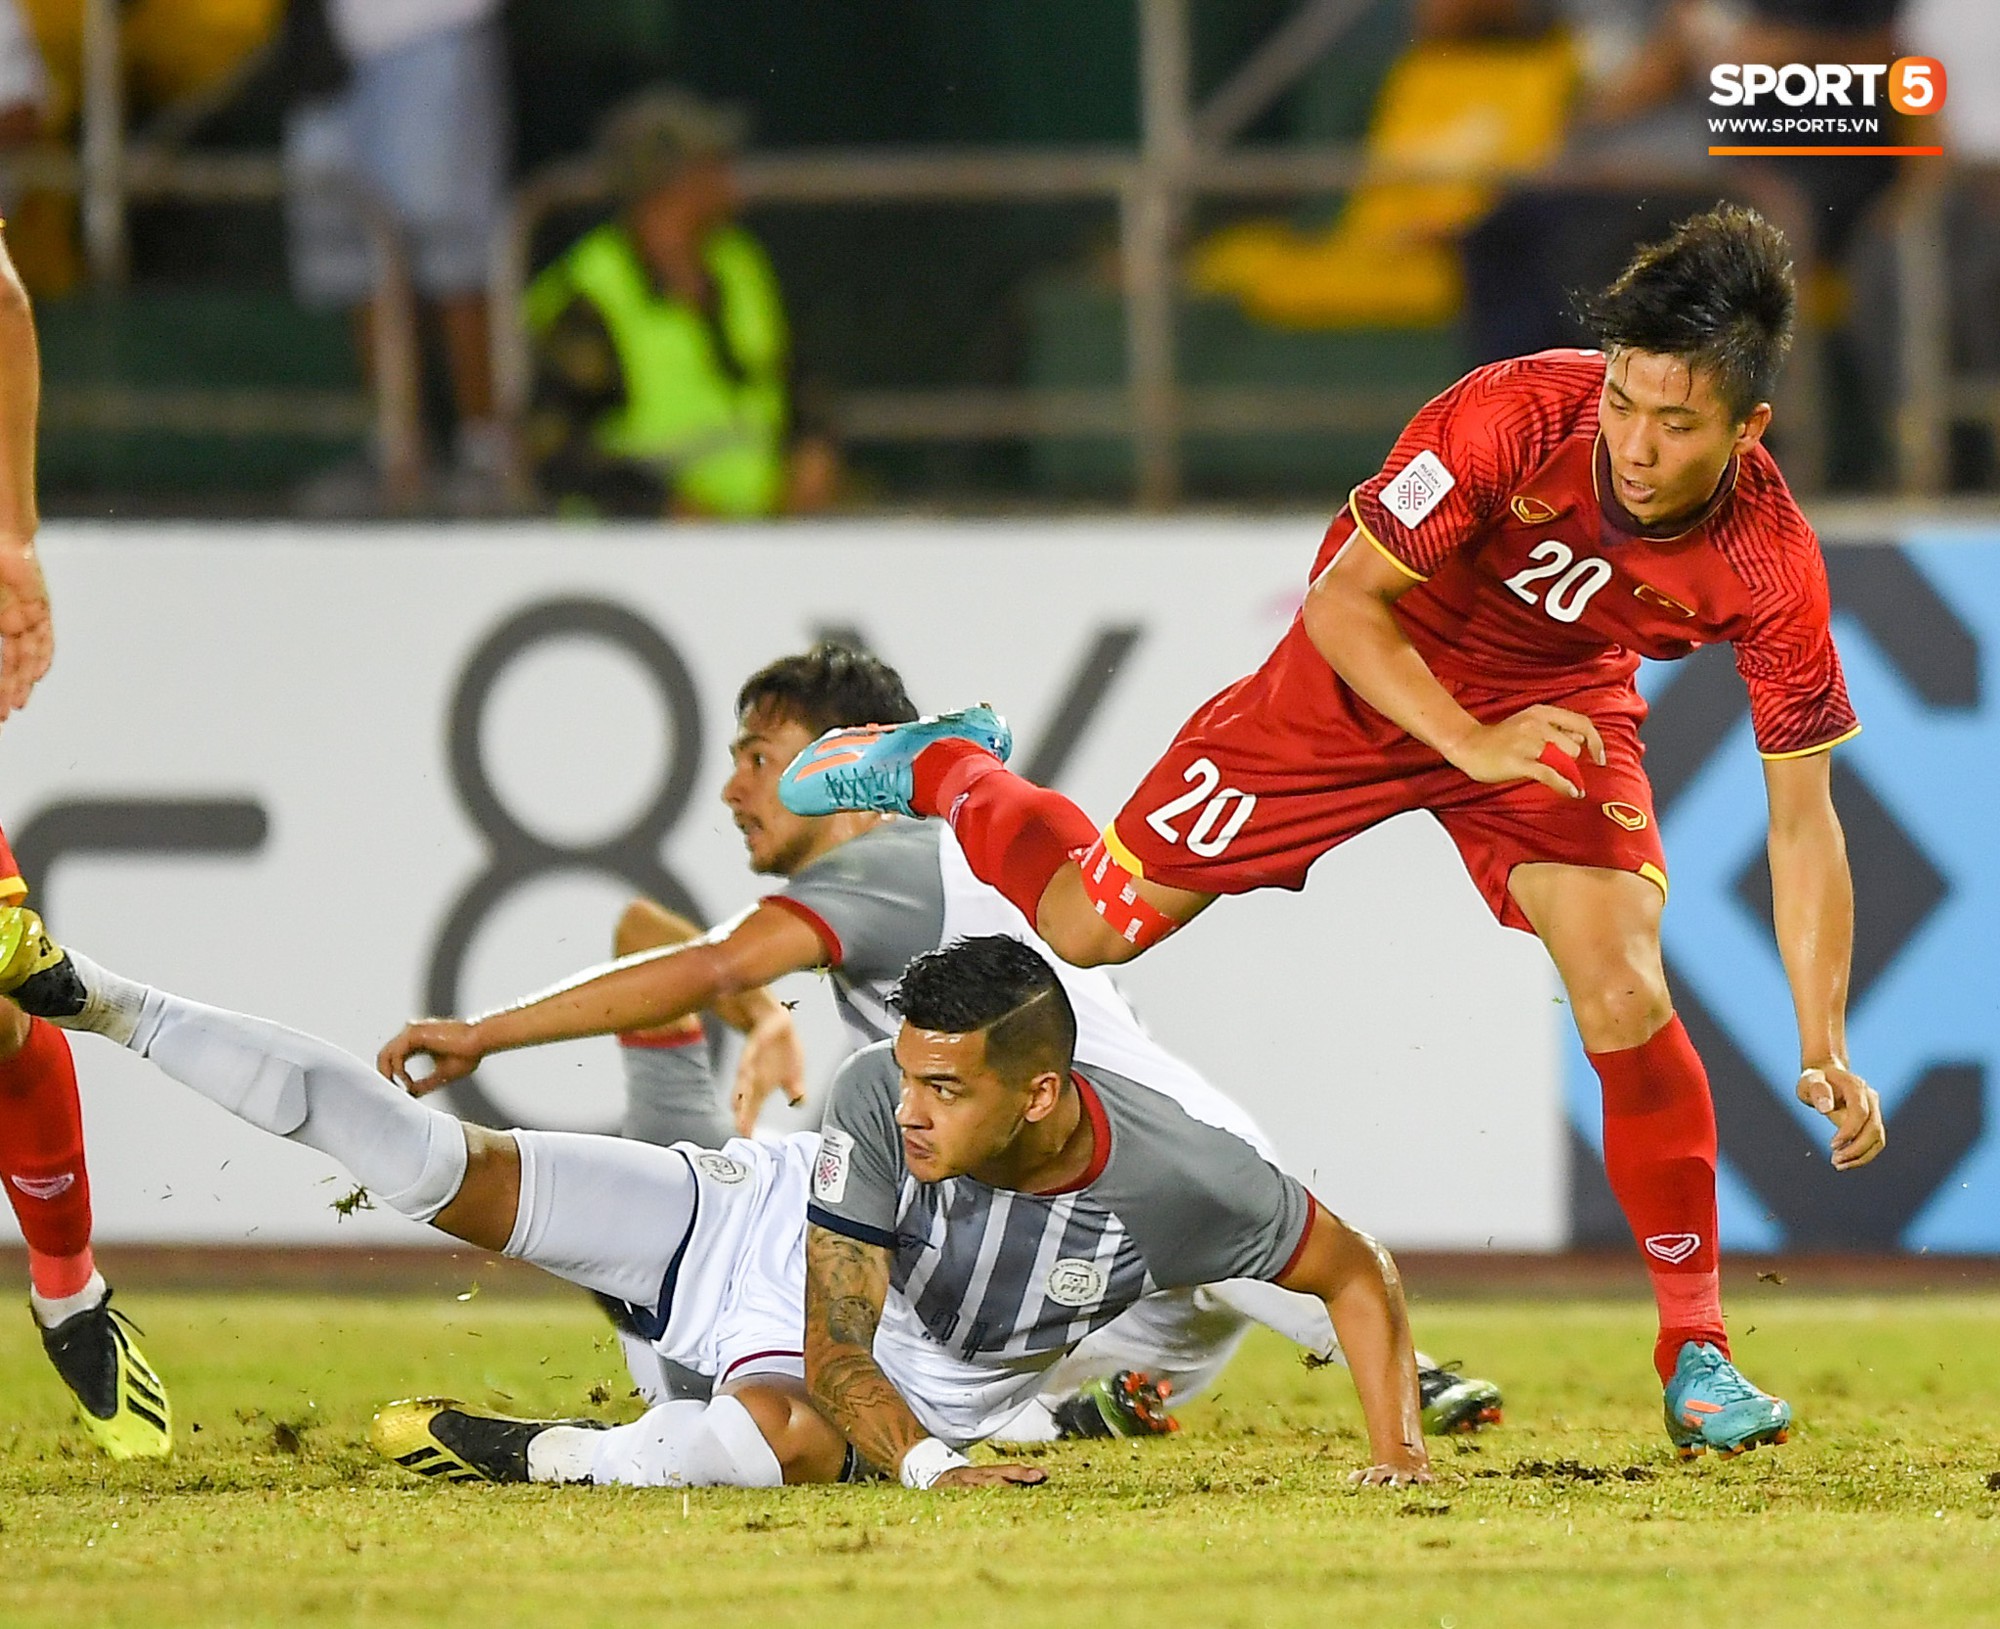 Báo Hàn: Thái Lan bị loại là cơ hội tuyệt vời để đội tuyển Việt Nam lên ngôi tại AFF Cup 2018-2